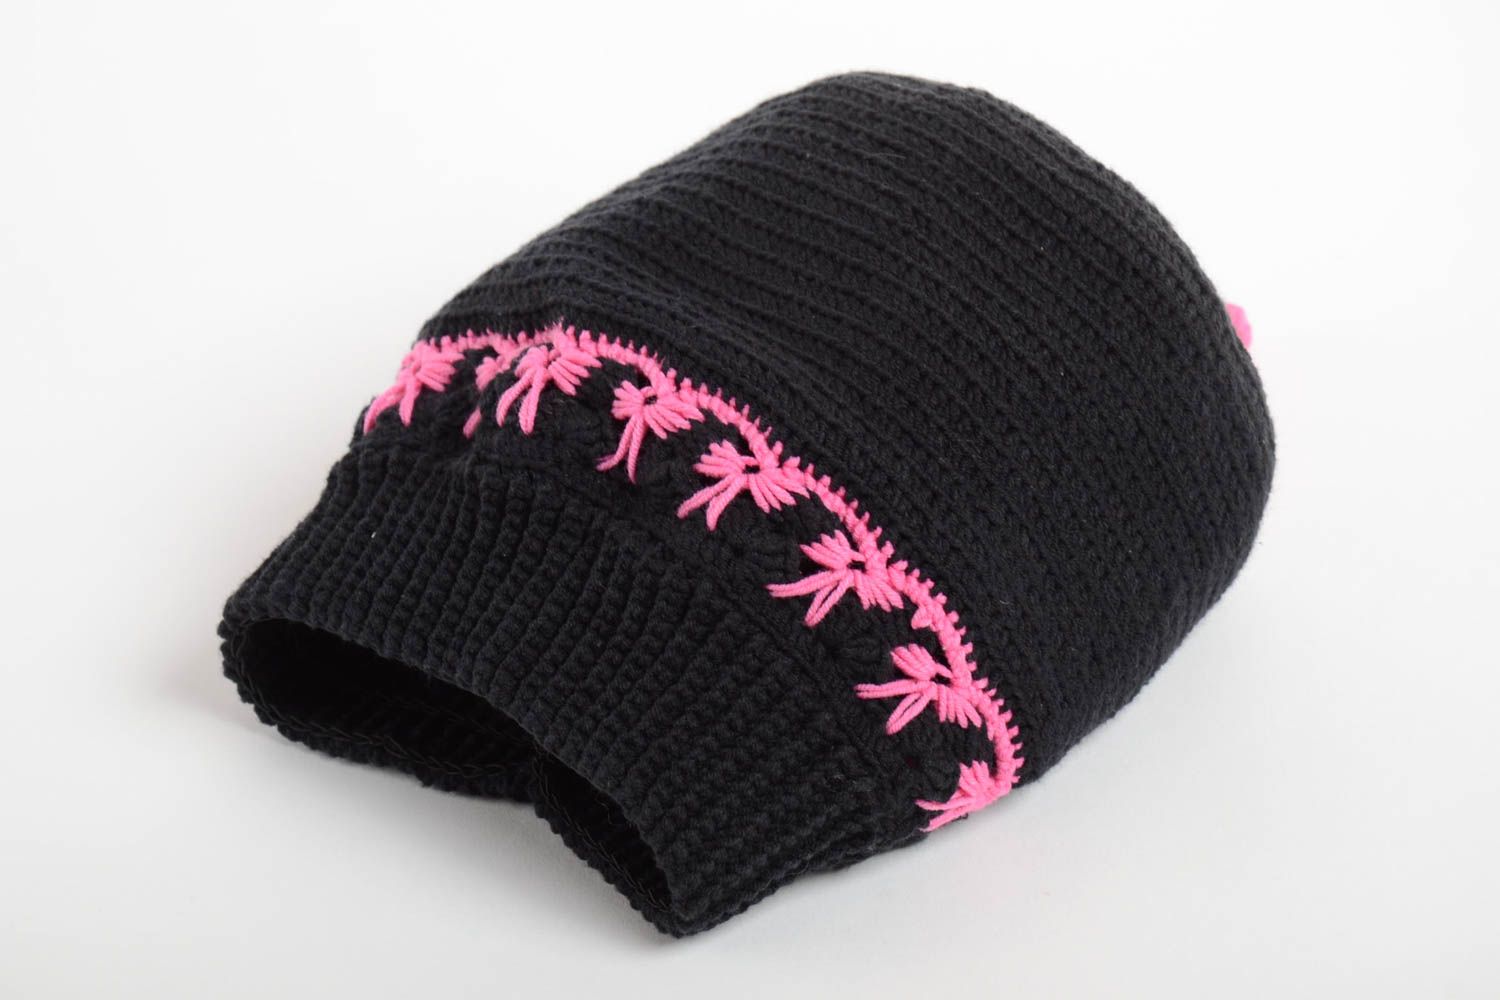 Handmade hat designer hat warm hat unusual beanie crocheted hat gift for women photo 3